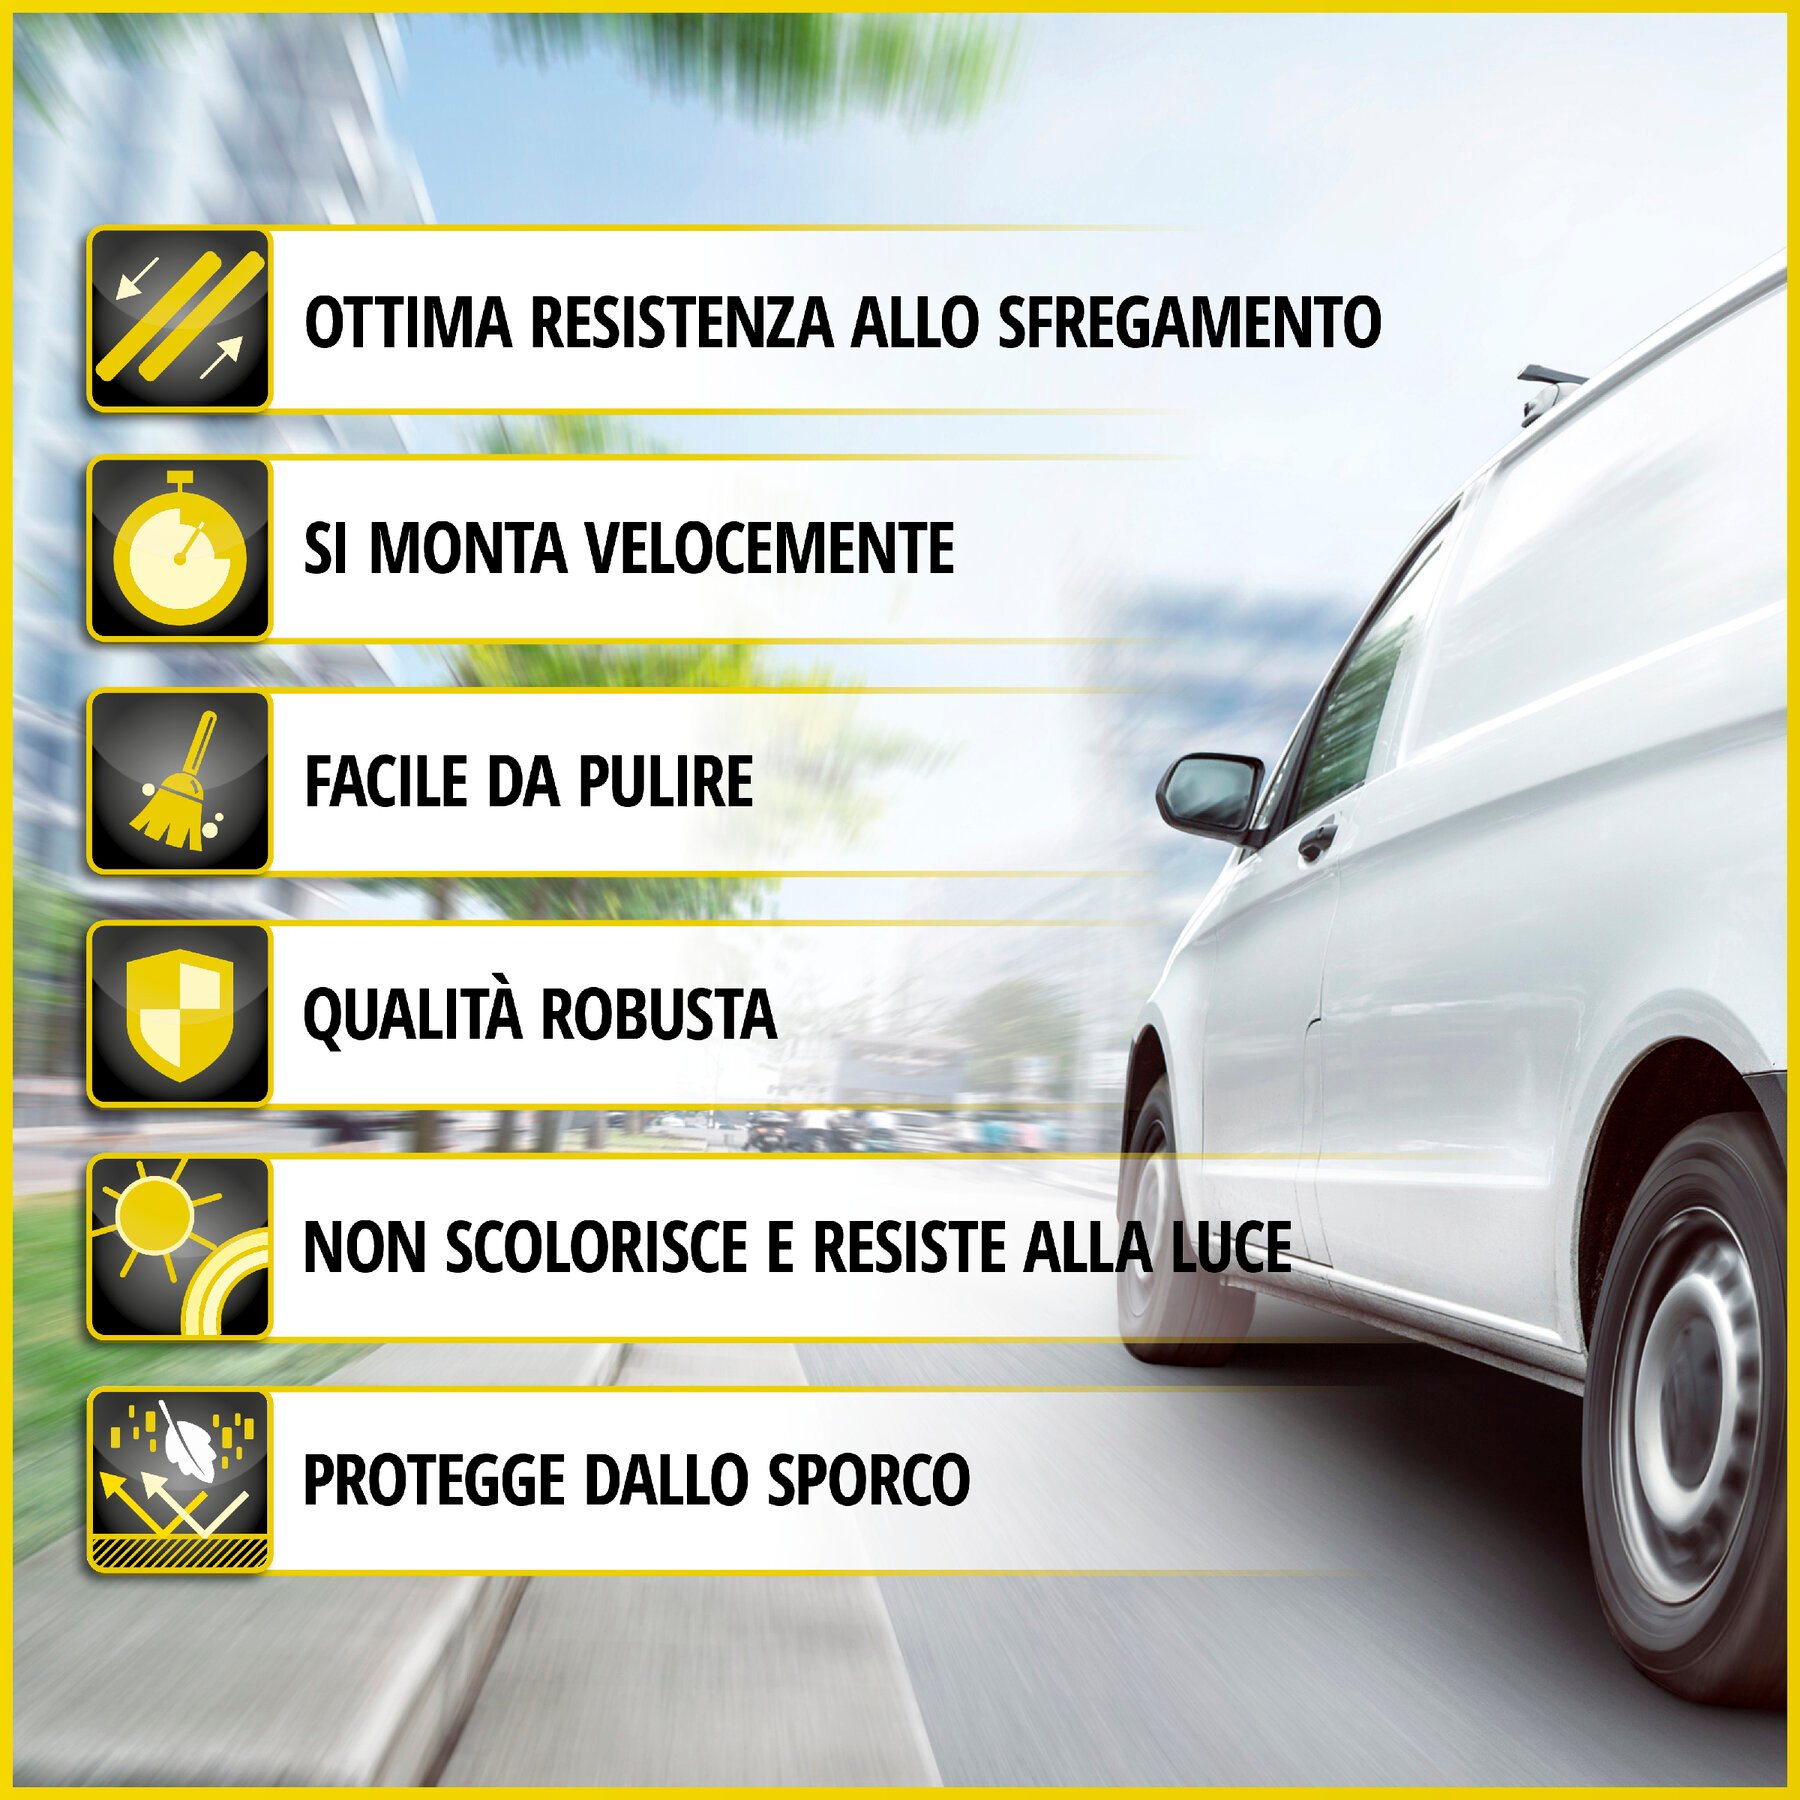 Transporter Coprisedili in similpelle per Opel Movano, Renault Master, Nissan Interstar, sedile singolo e doppio